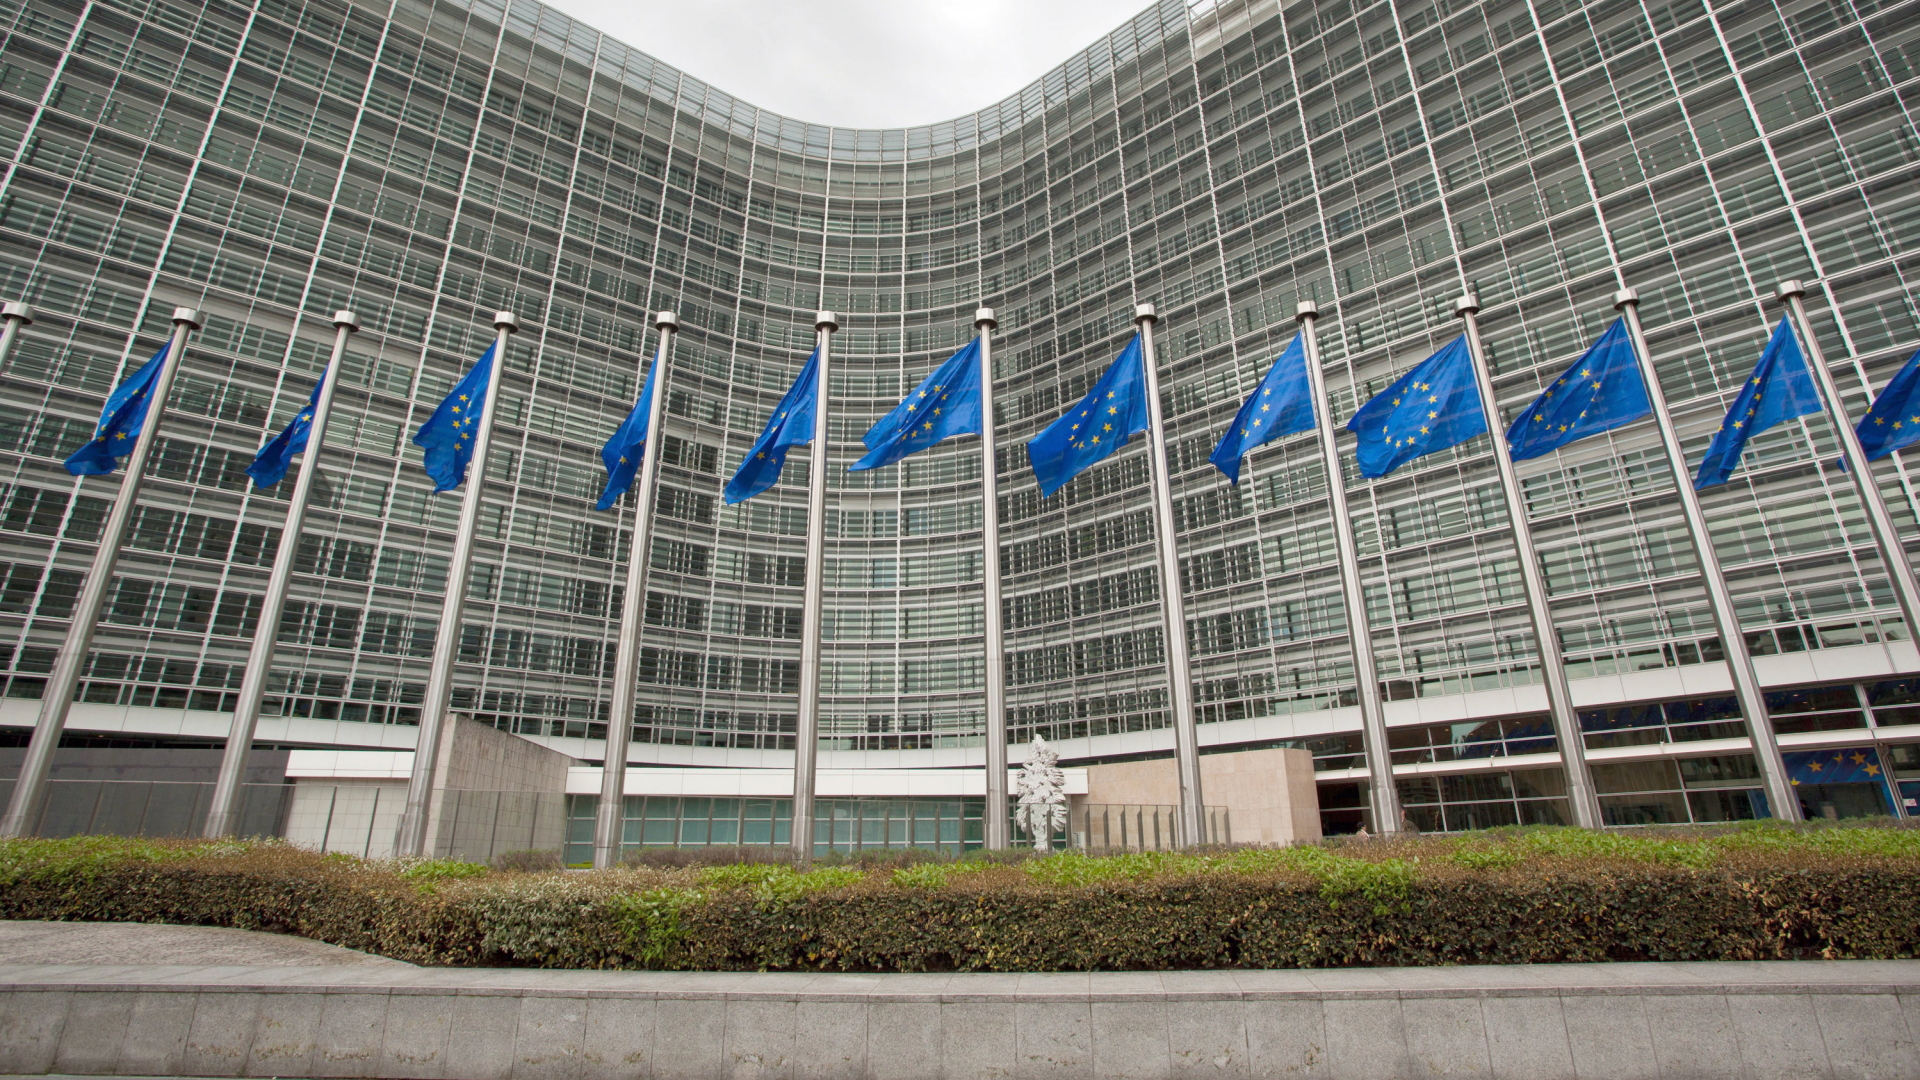  EU-Flaggen wehen vor dem Gebäude der Europäischen Kommission in Brüssel.